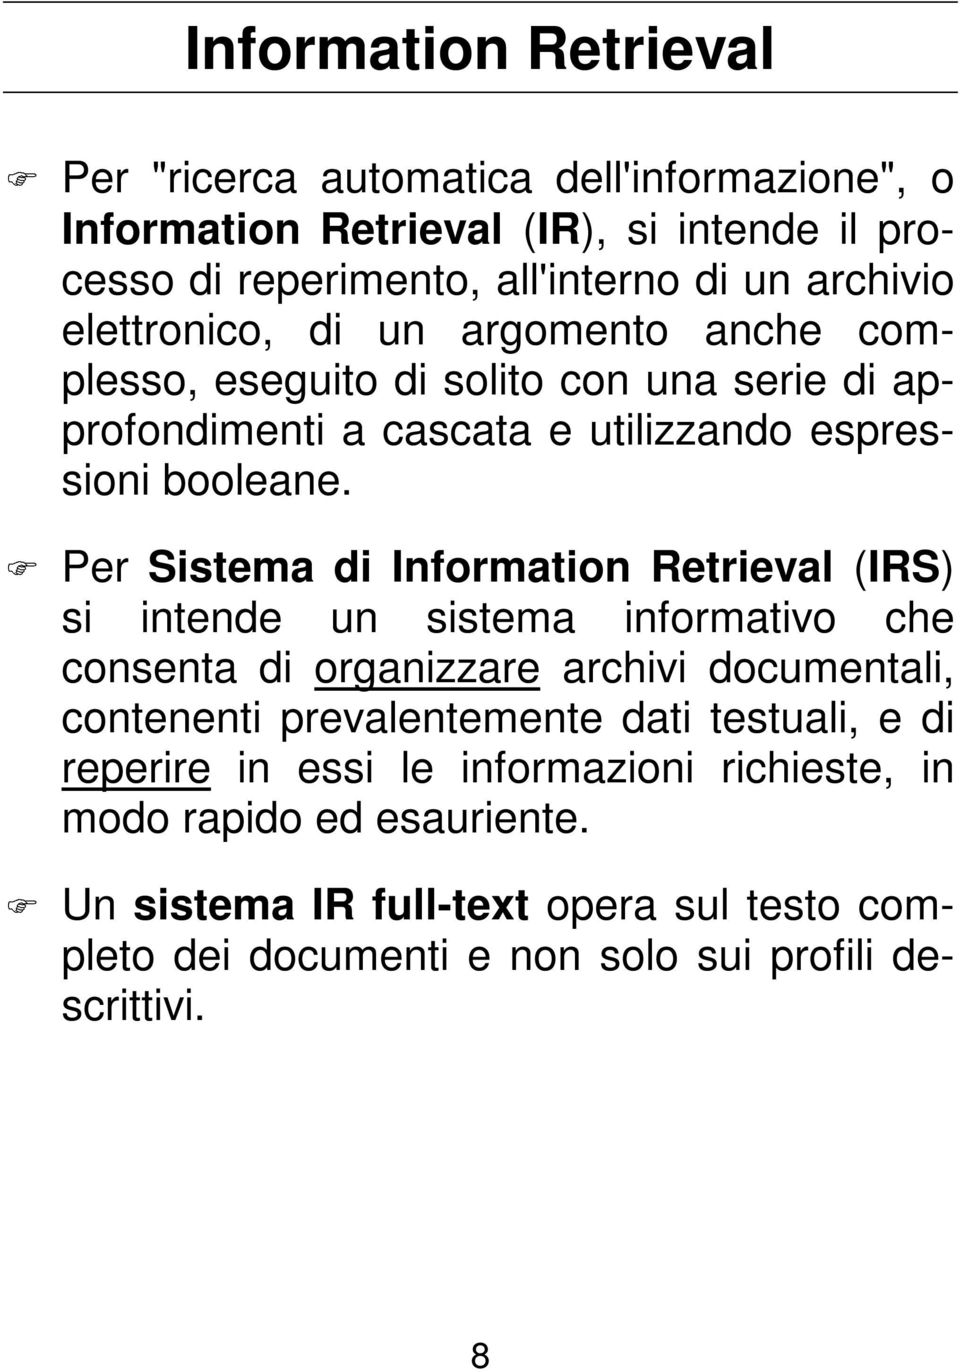 Per Sistema di Information Retrieval (IRS) si intende un sistema informativo che consenta di organizzare archivi documentali, contenenti prevalentemente dati